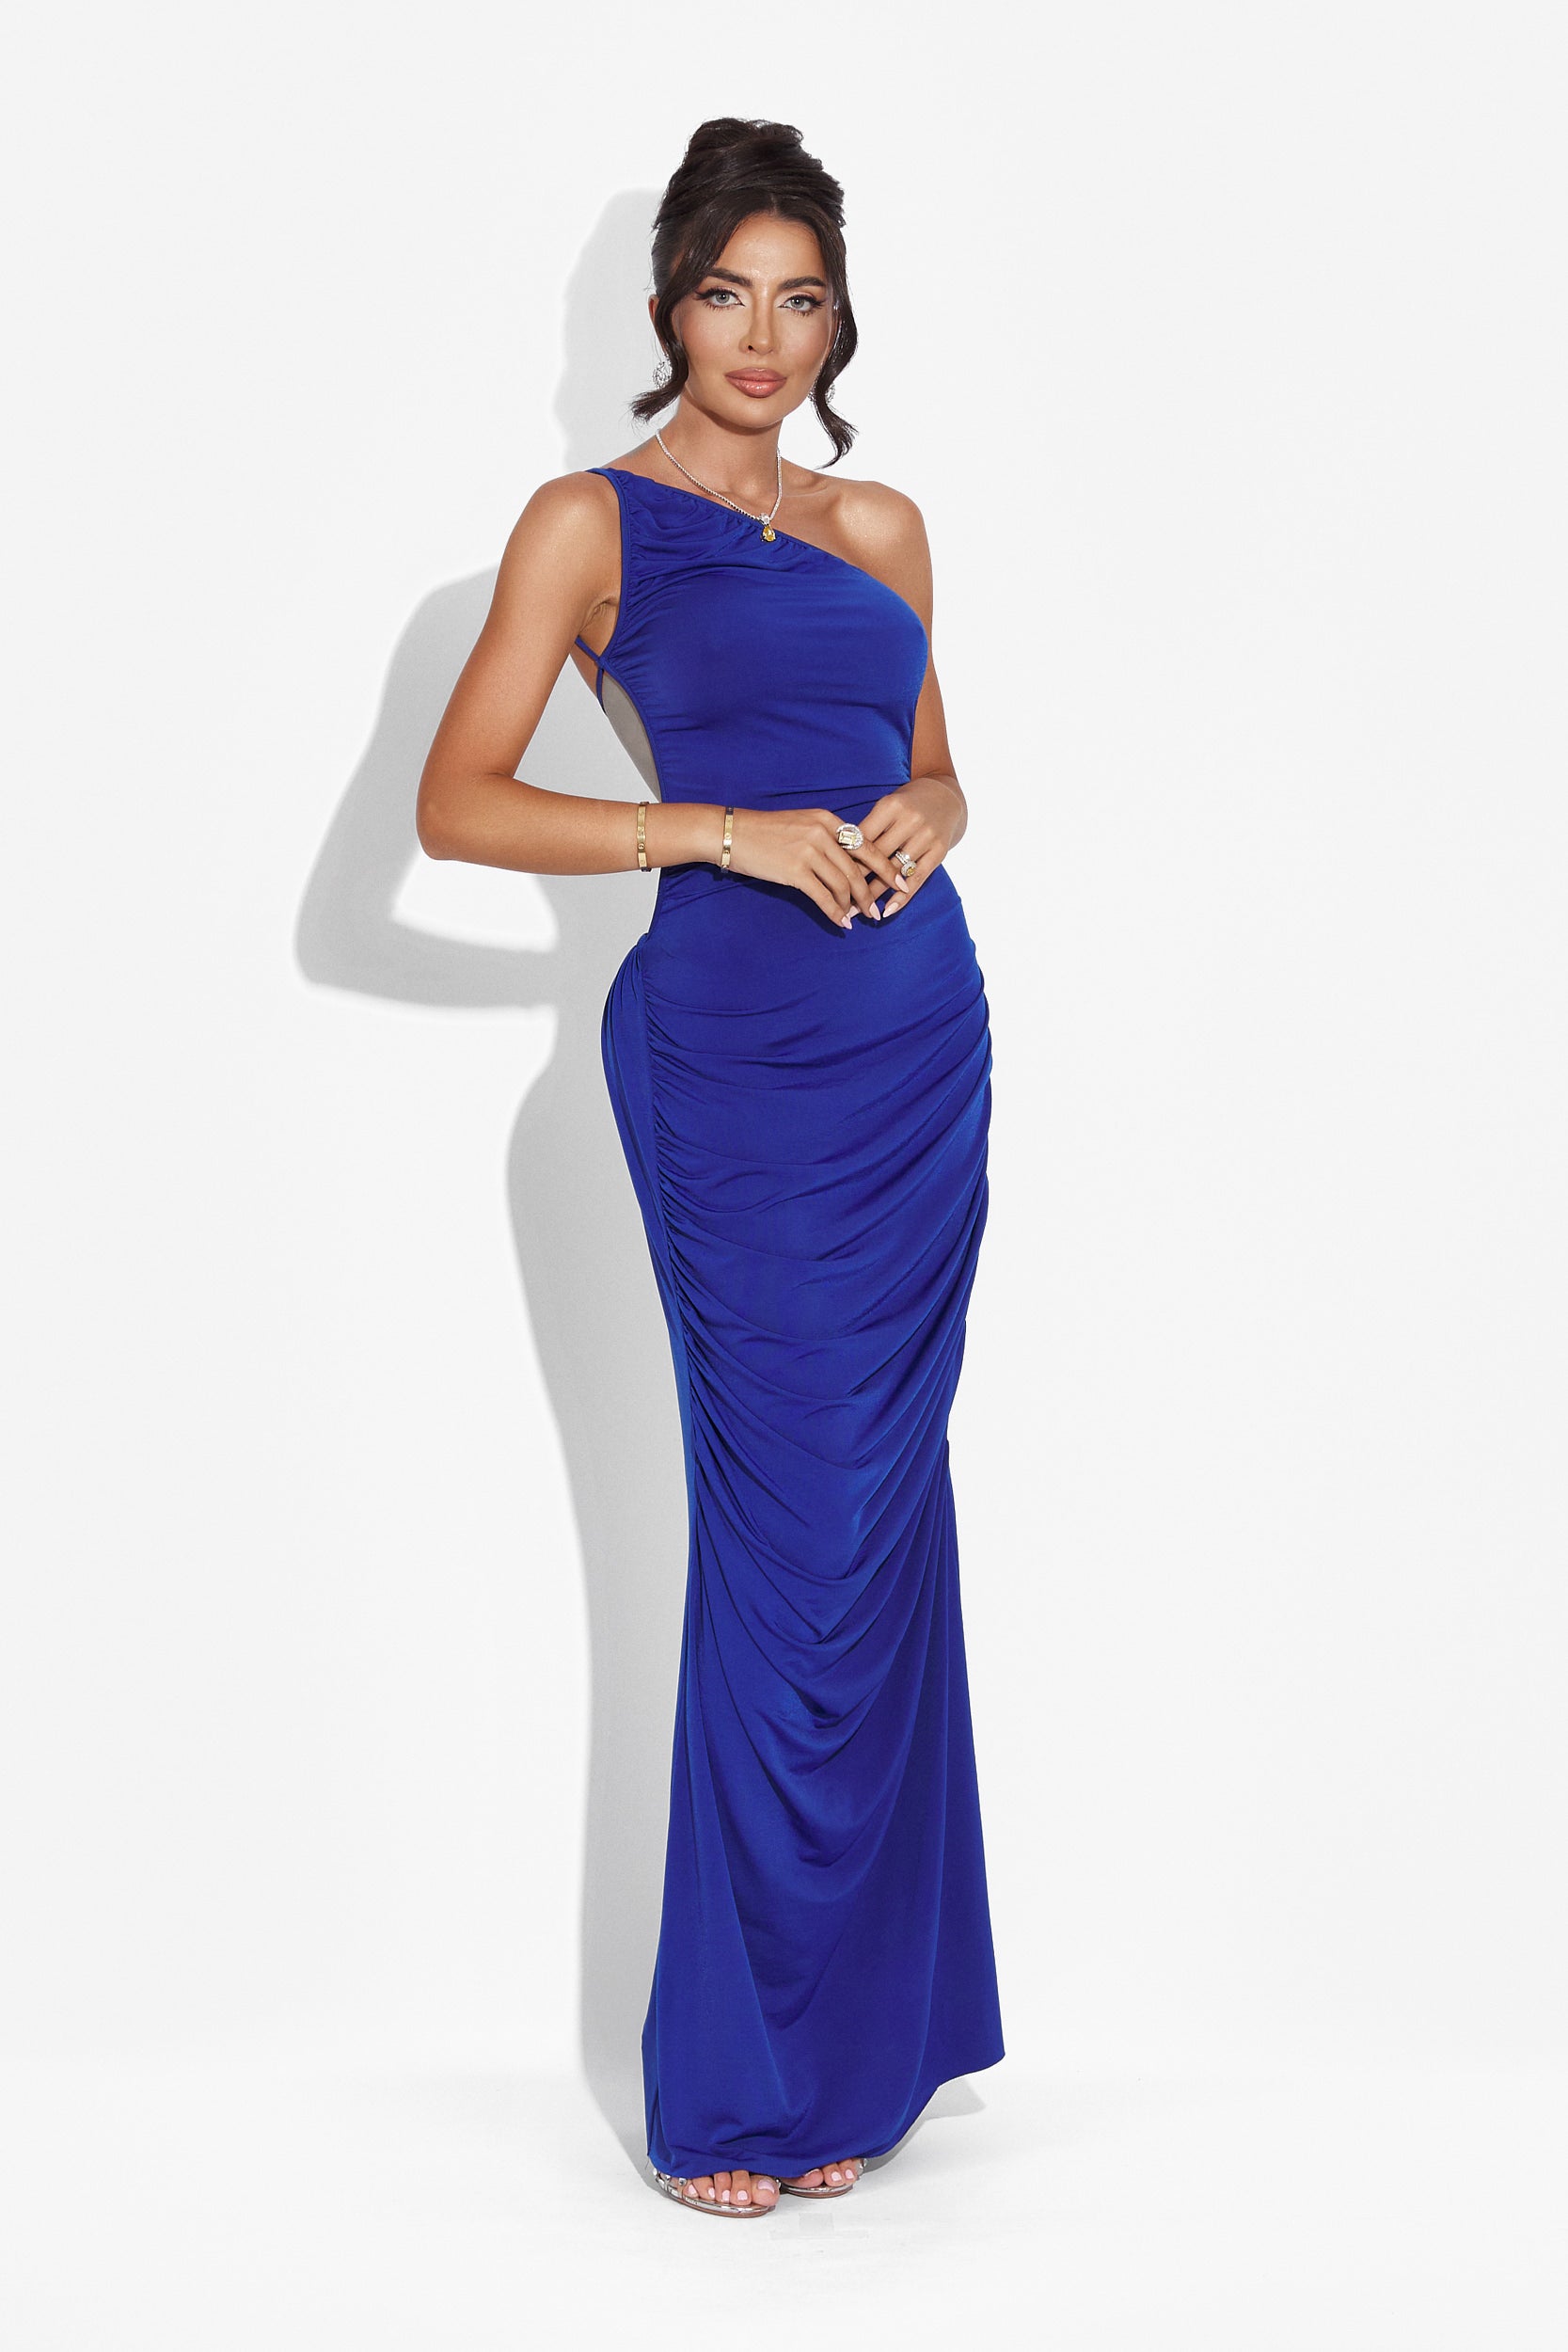 Calvia Bogas hosszú kék női ruha